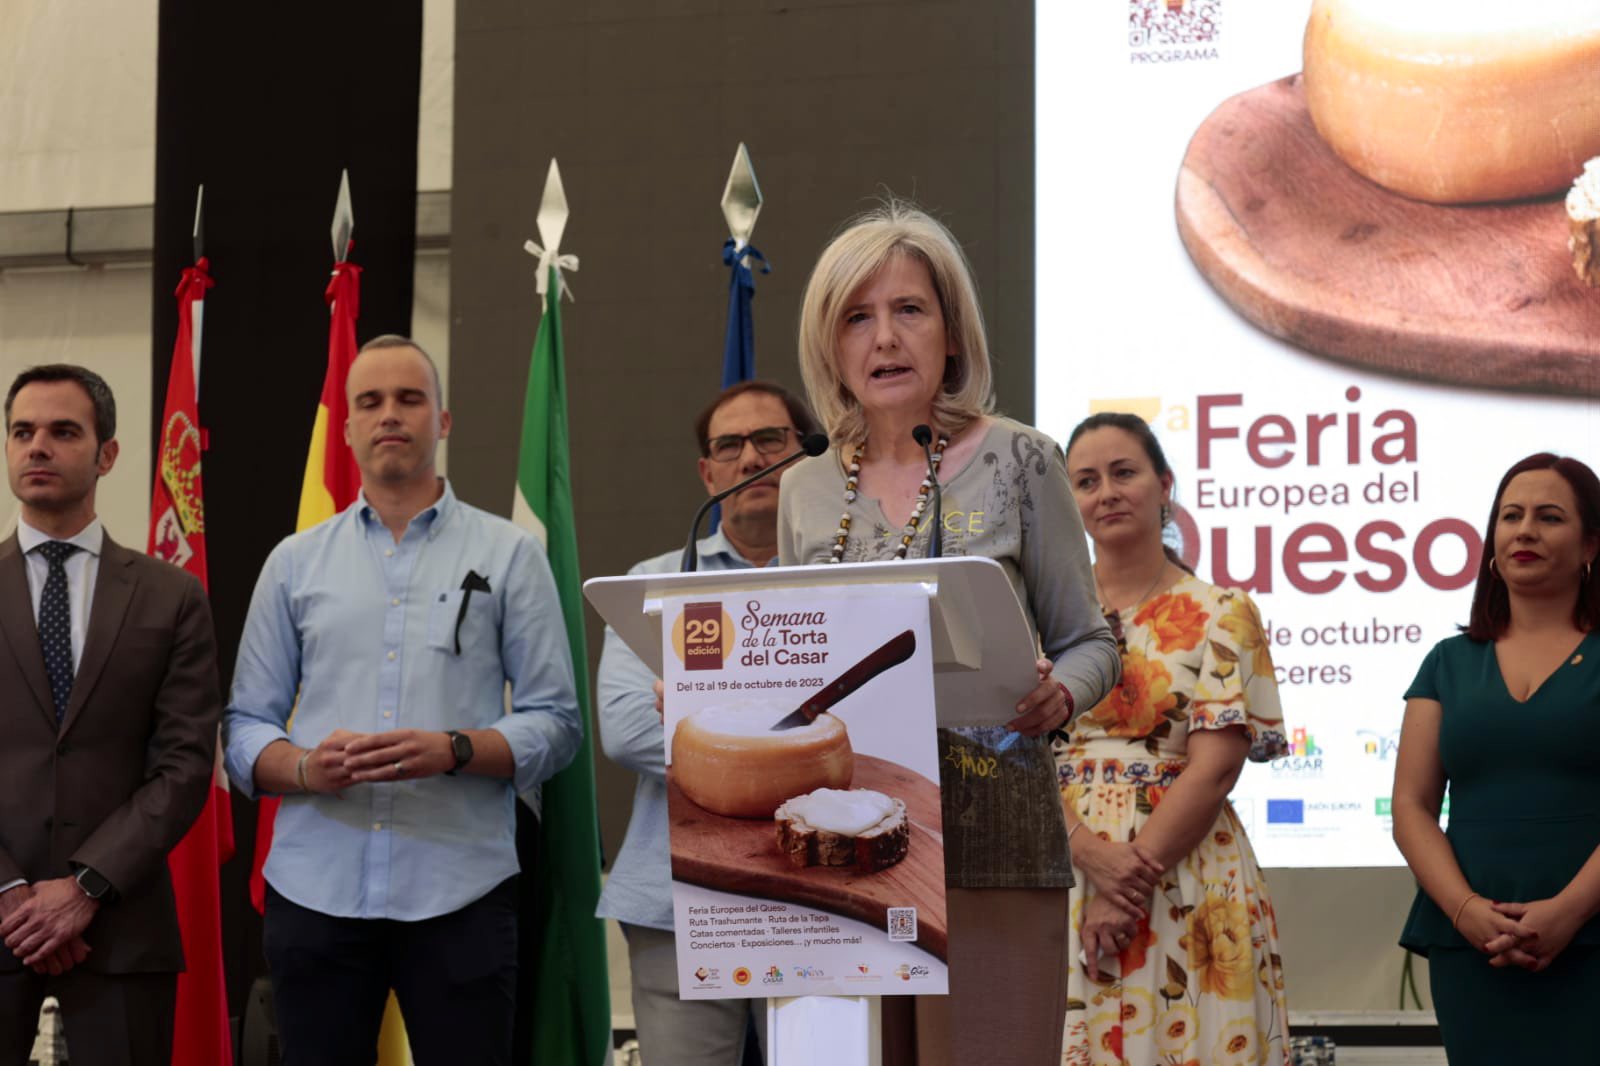 Image 1 of article La VII Feria Europea del Queso en Casar de Cáceres reúne a 21 queserías de España y Portugal